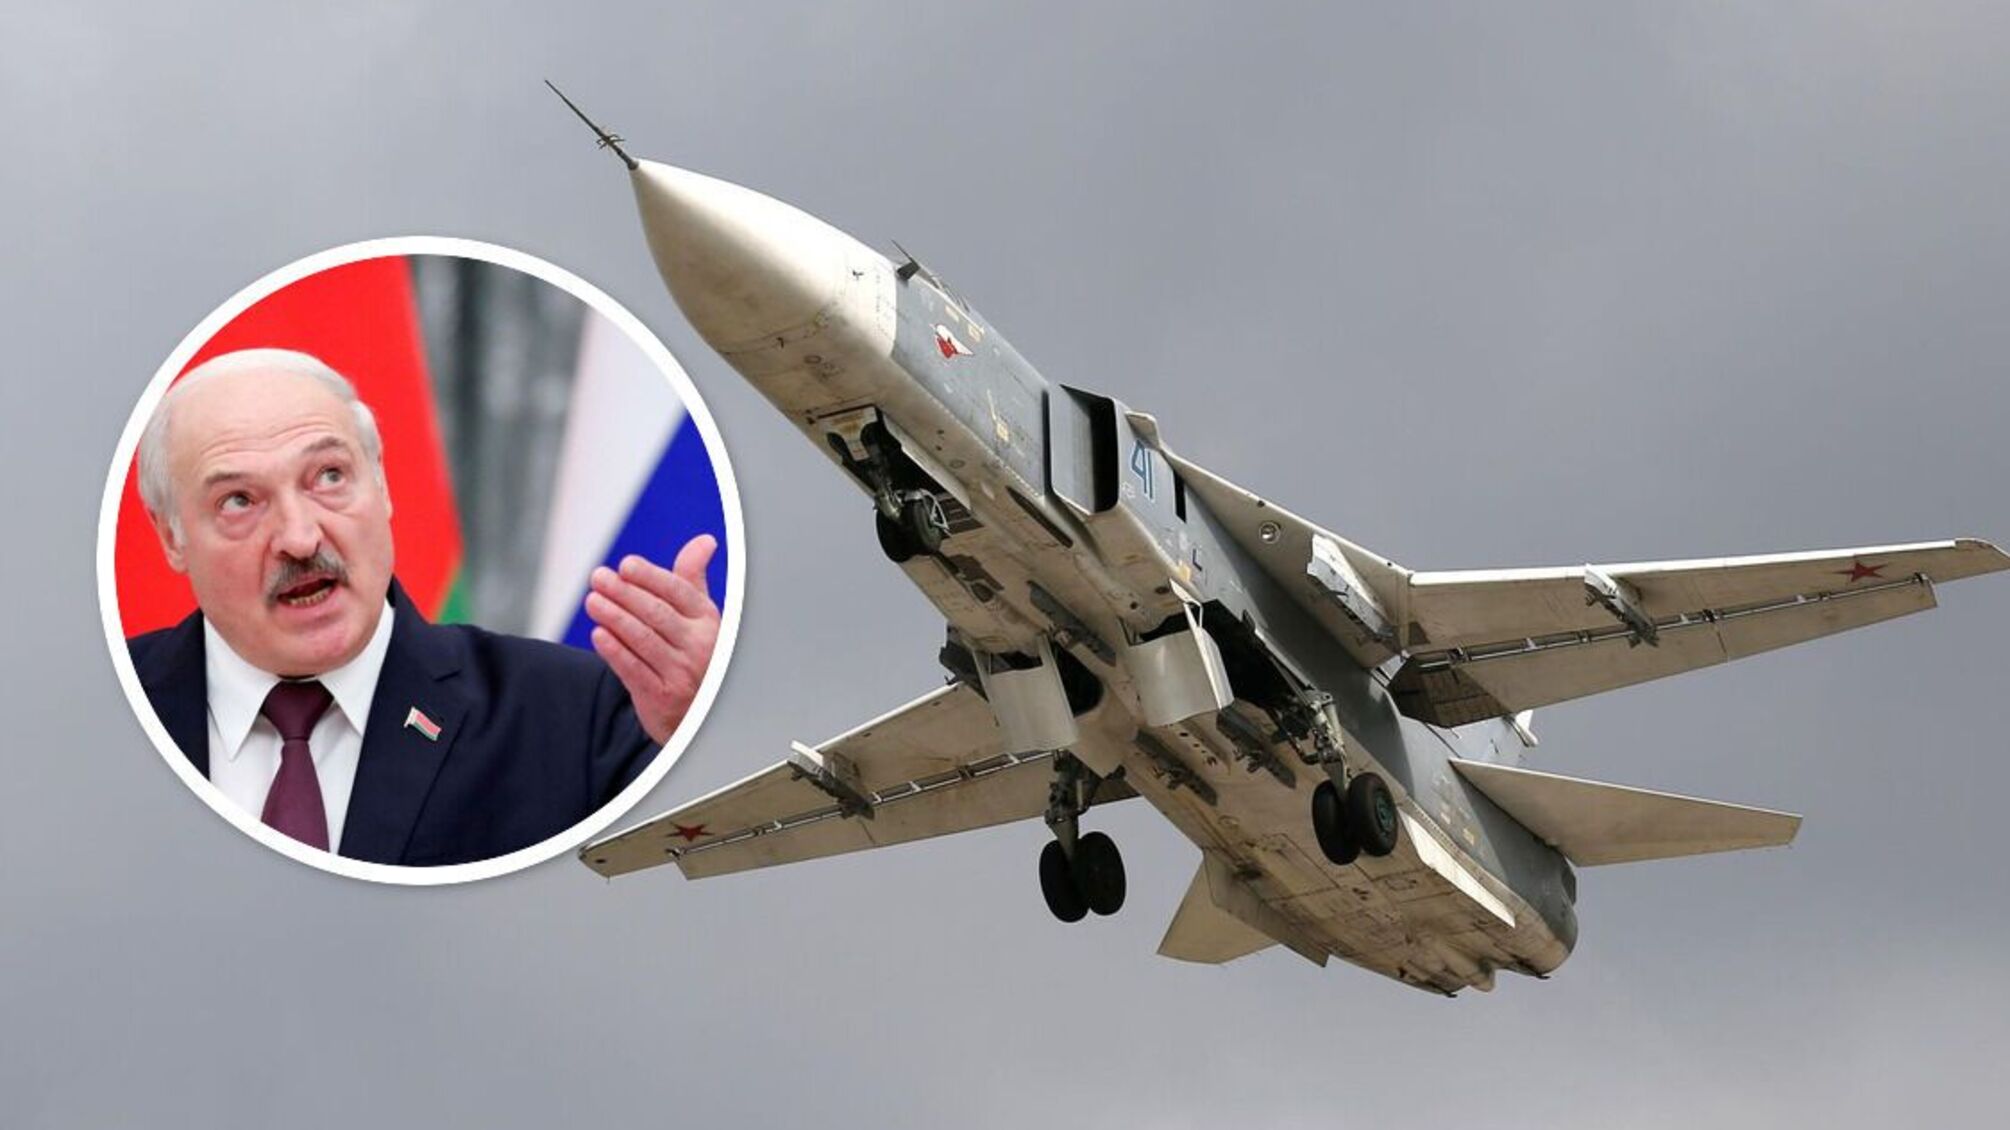 Лукашенко снова угрожает: самолеты СУ-24 ВВС Беларуси готовы нести ядерное оружие